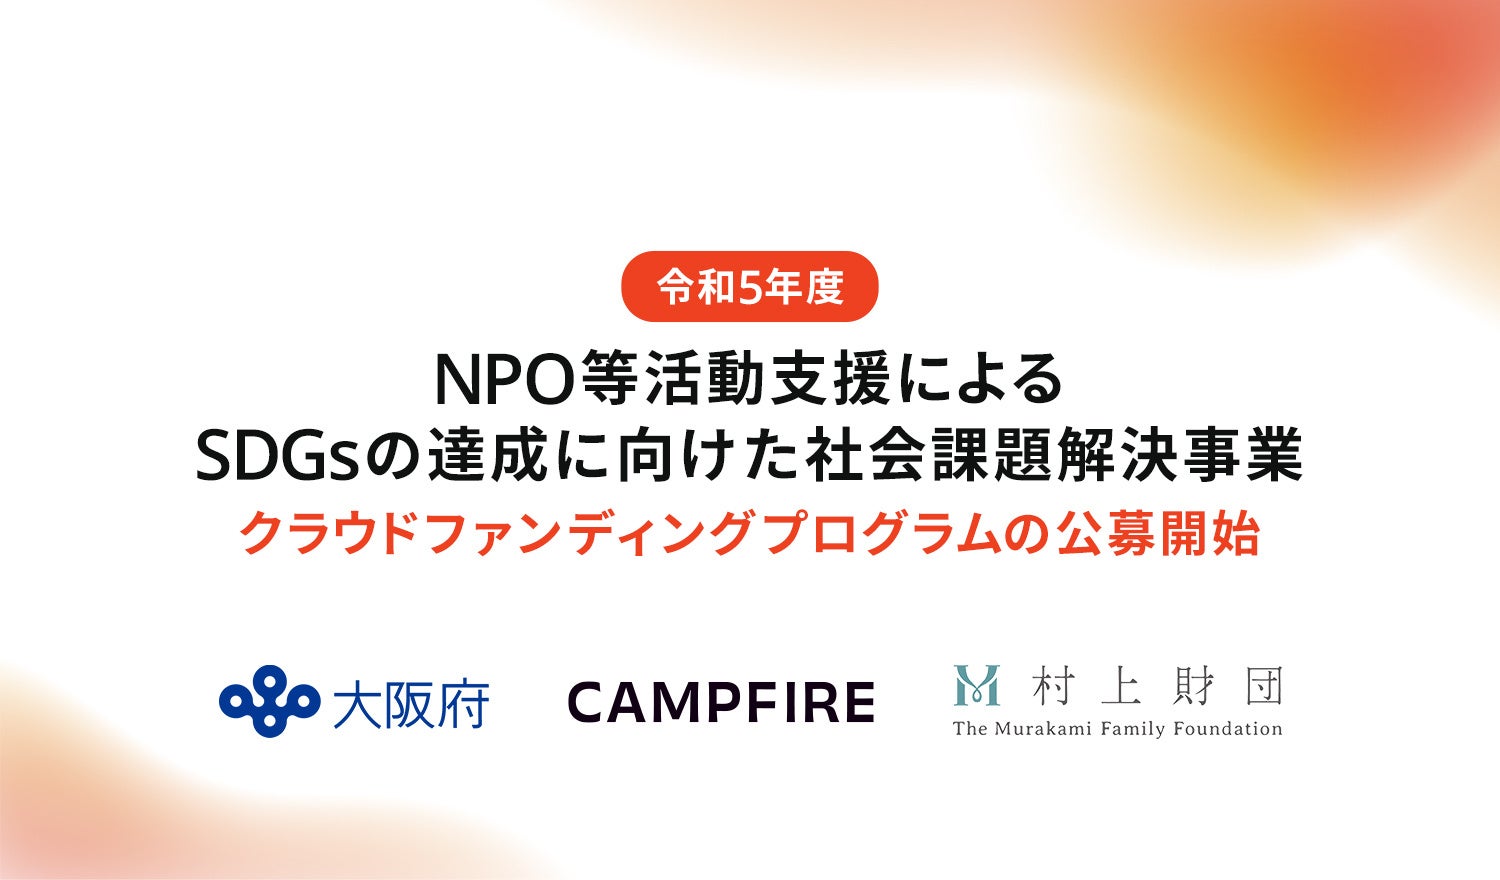 CAMPFIRE、大阪府と村上財団による「NPO等活動支援によるSDGsの達成に向けた社会課題解決事業」クラウドファンディングプログラムの公募を開始のサブ画像1